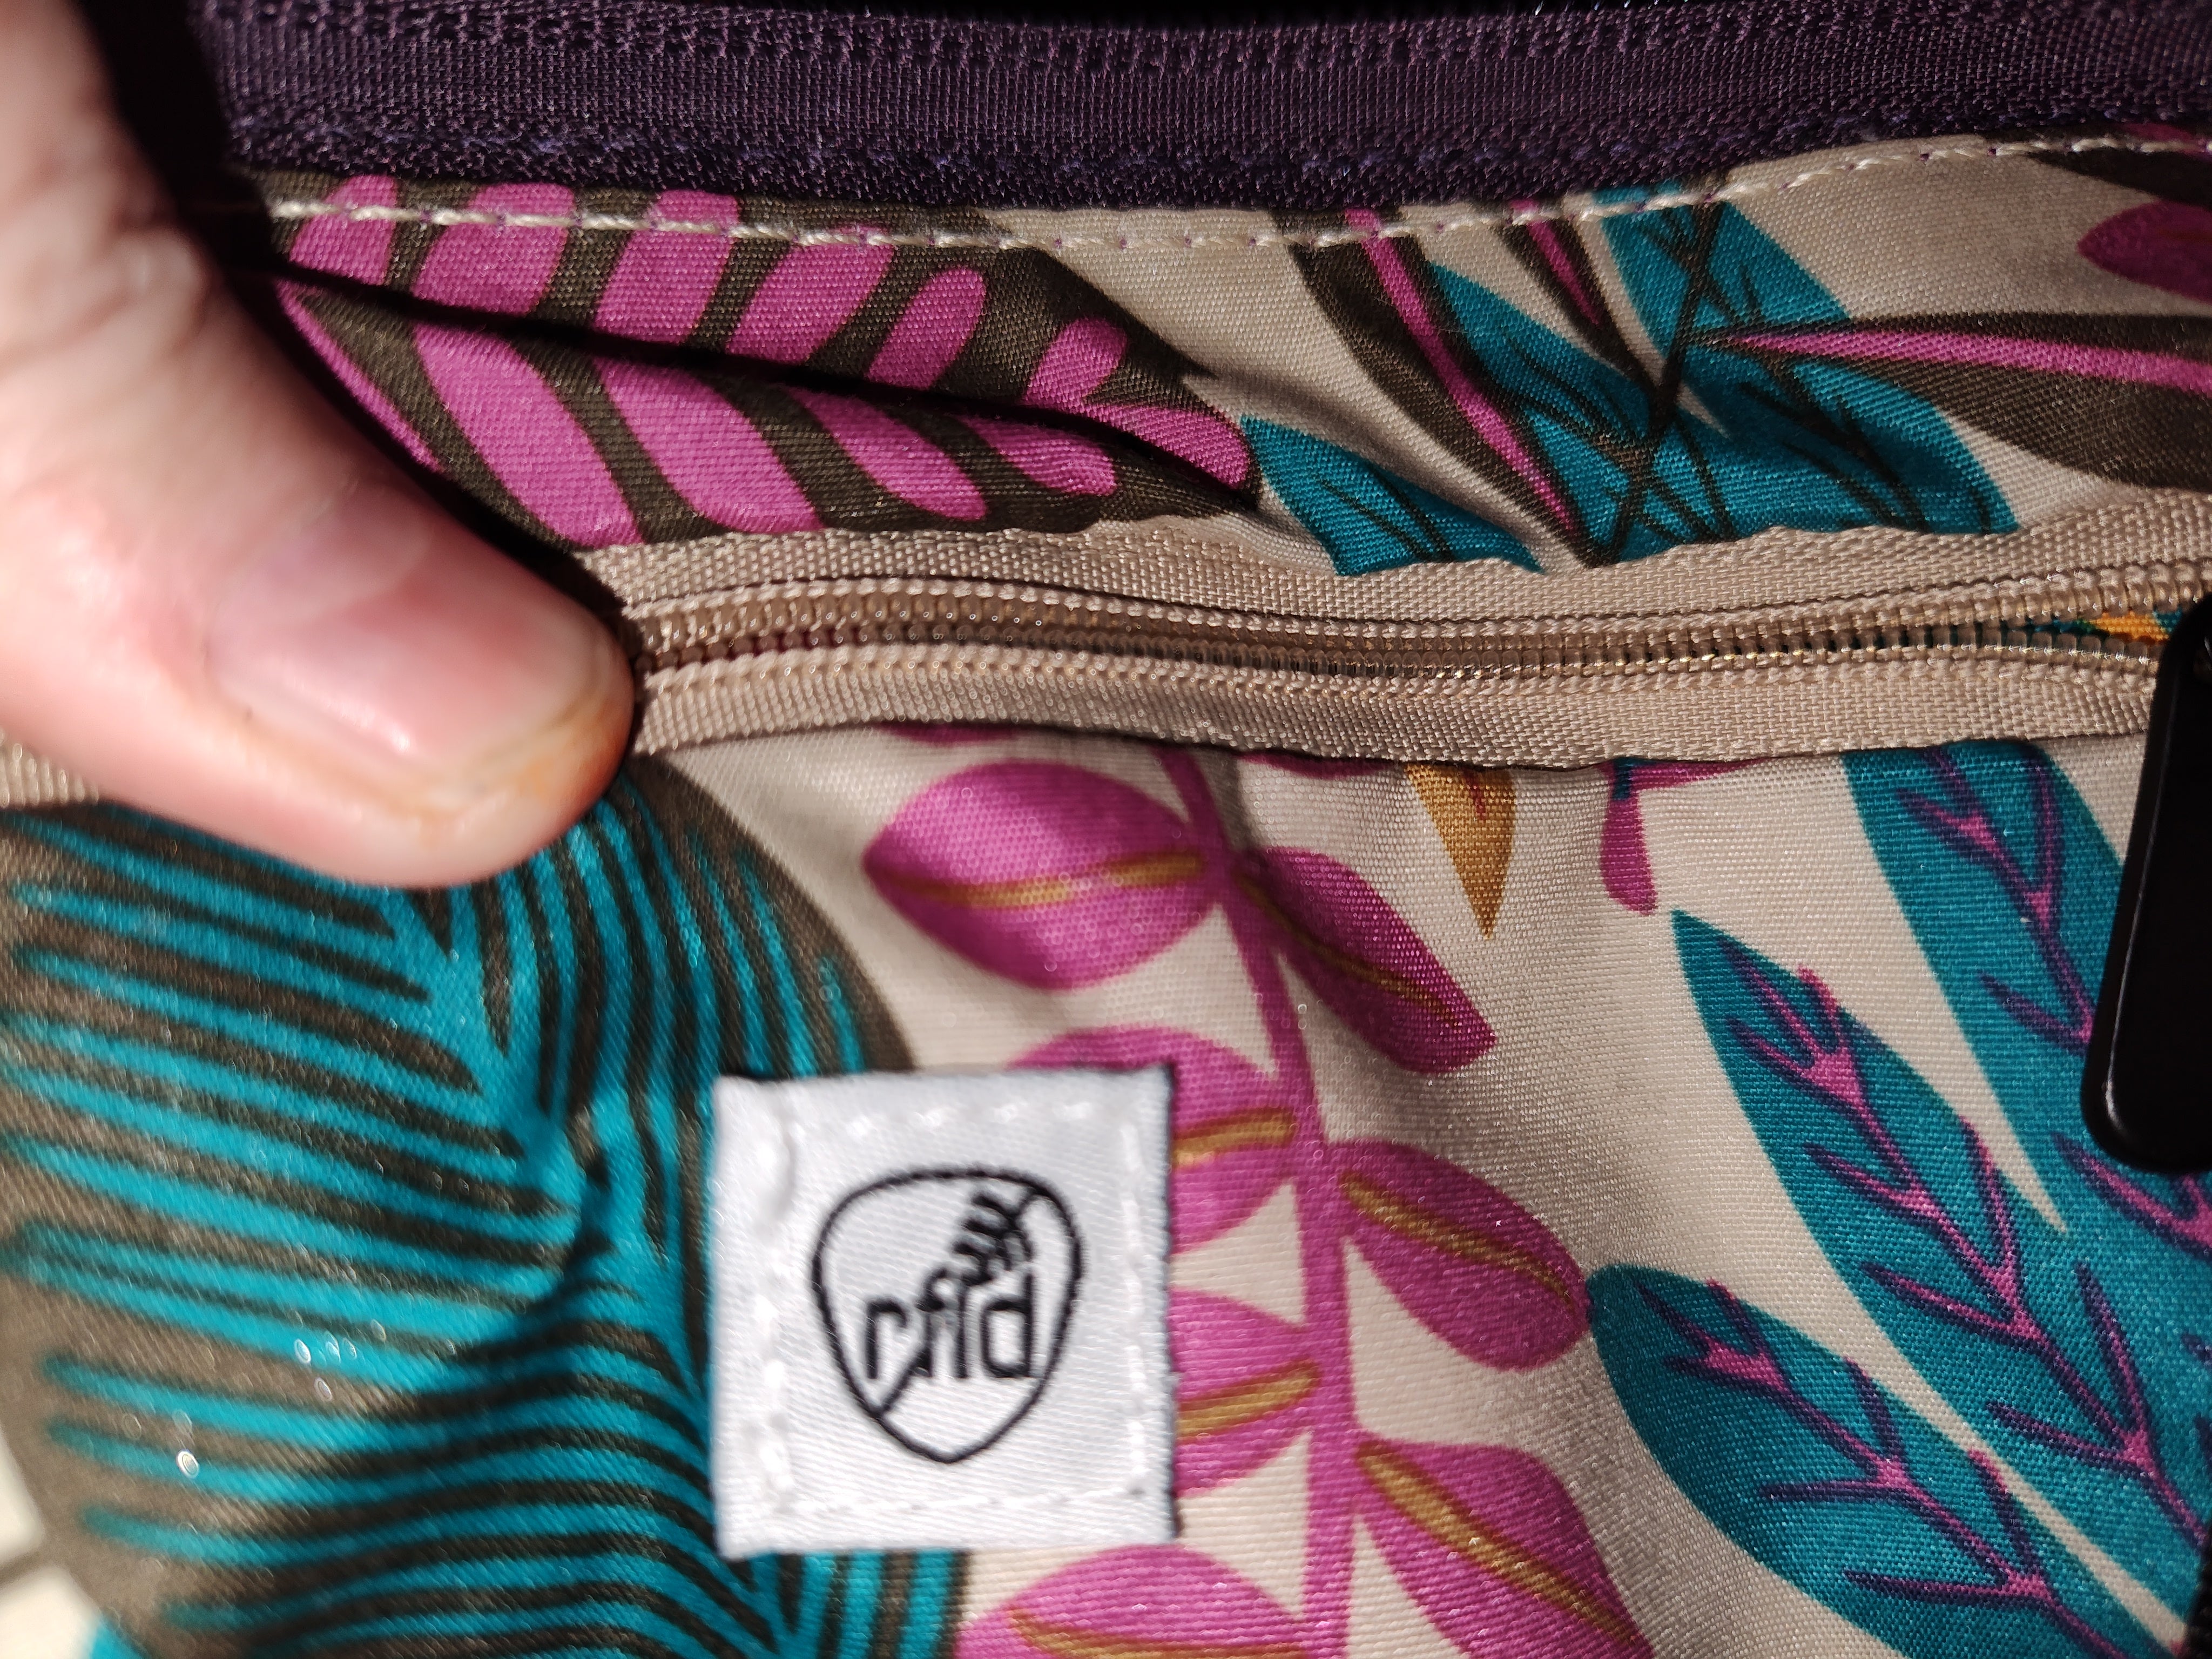 Women's Travelon Lavender Crossbody Bag - pre-owned